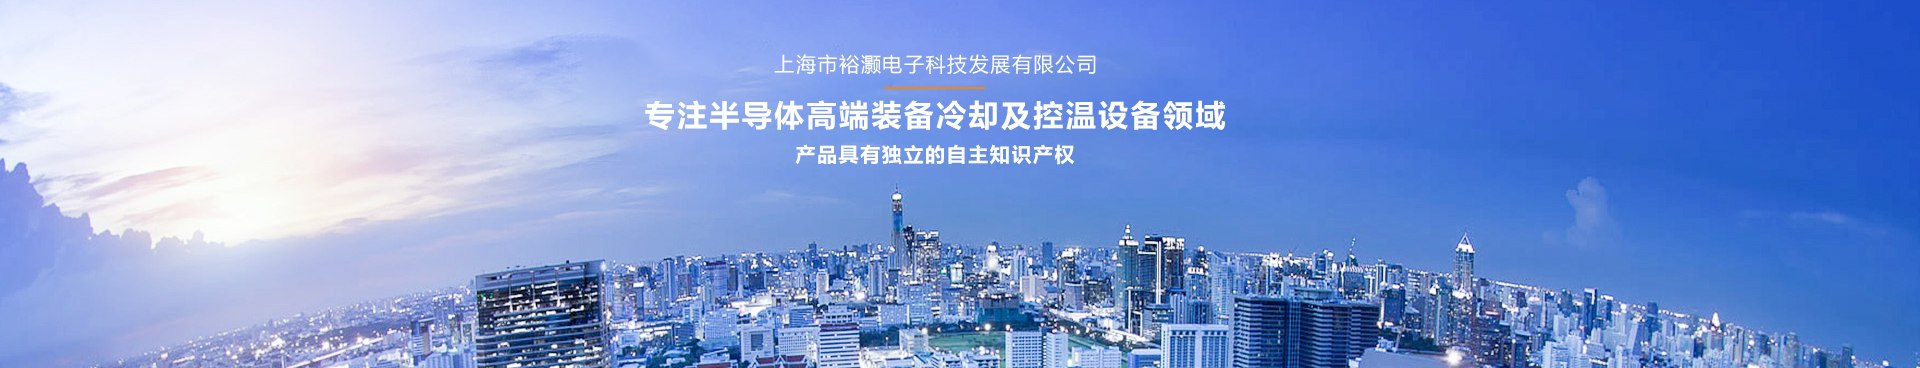 上海市裕灏电子科技发展有限公司